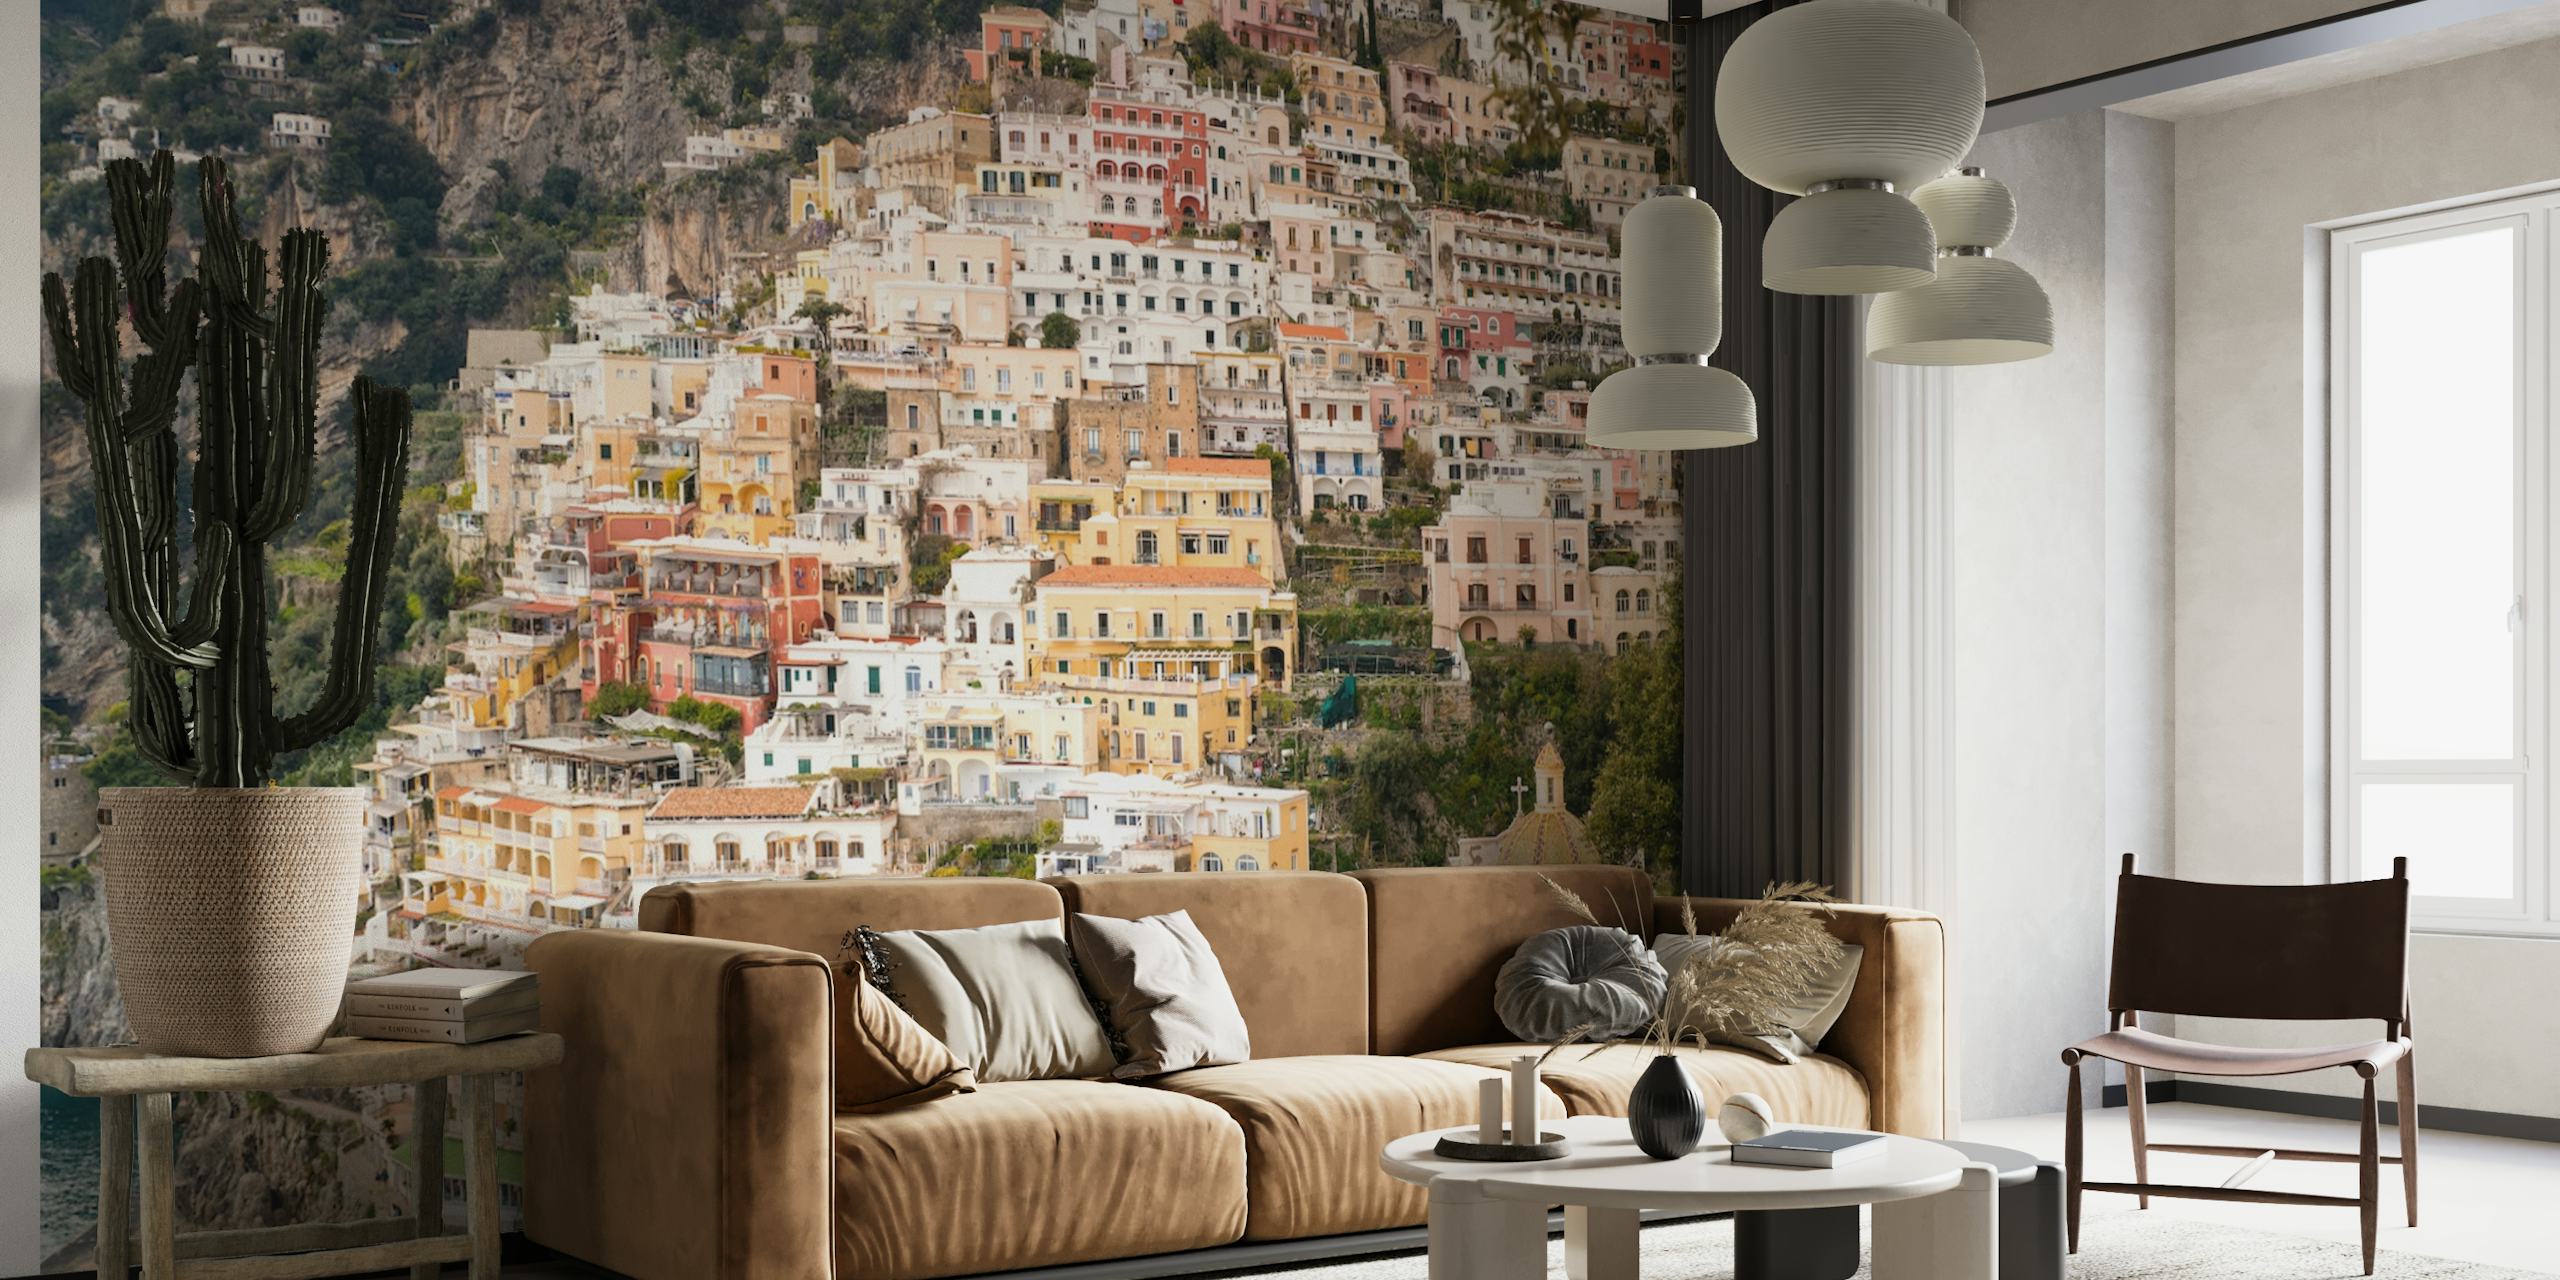 Wandbild an der Amalfiküste von Positano mit farbenfrohen Gebäuden und mediterranem Flair